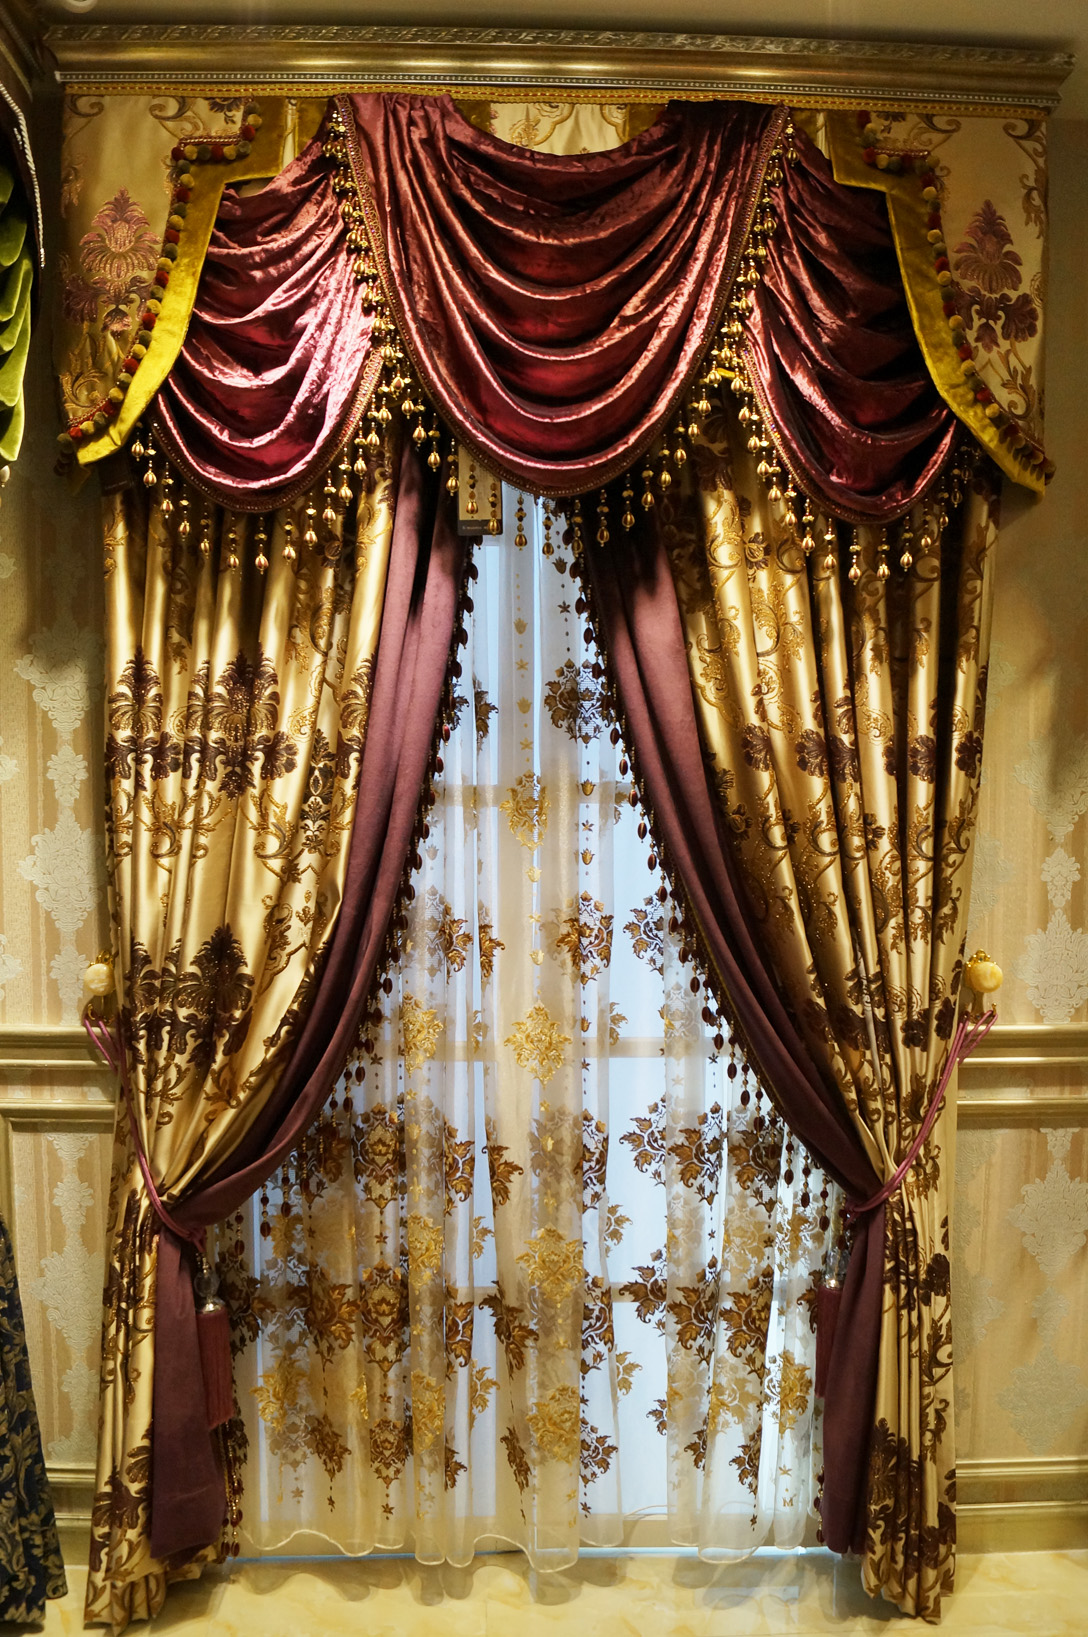 伊莎莱-欧式别墅客厅窗帘效果图-客厅窗帘图片